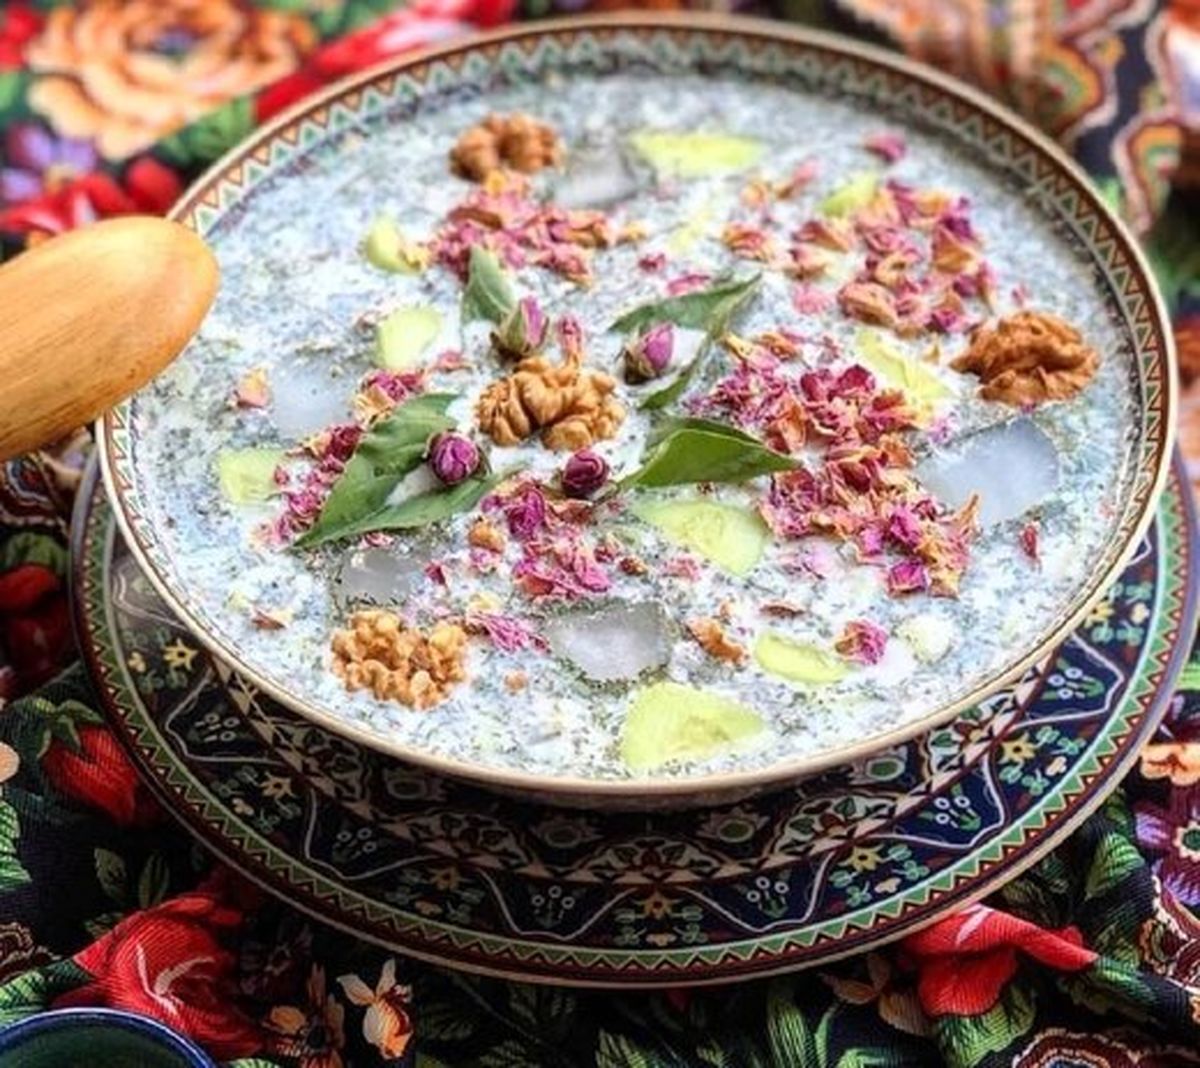 نیویورک تایمز این غذای تهرانی را خوراکی محبوب اعلام کرد